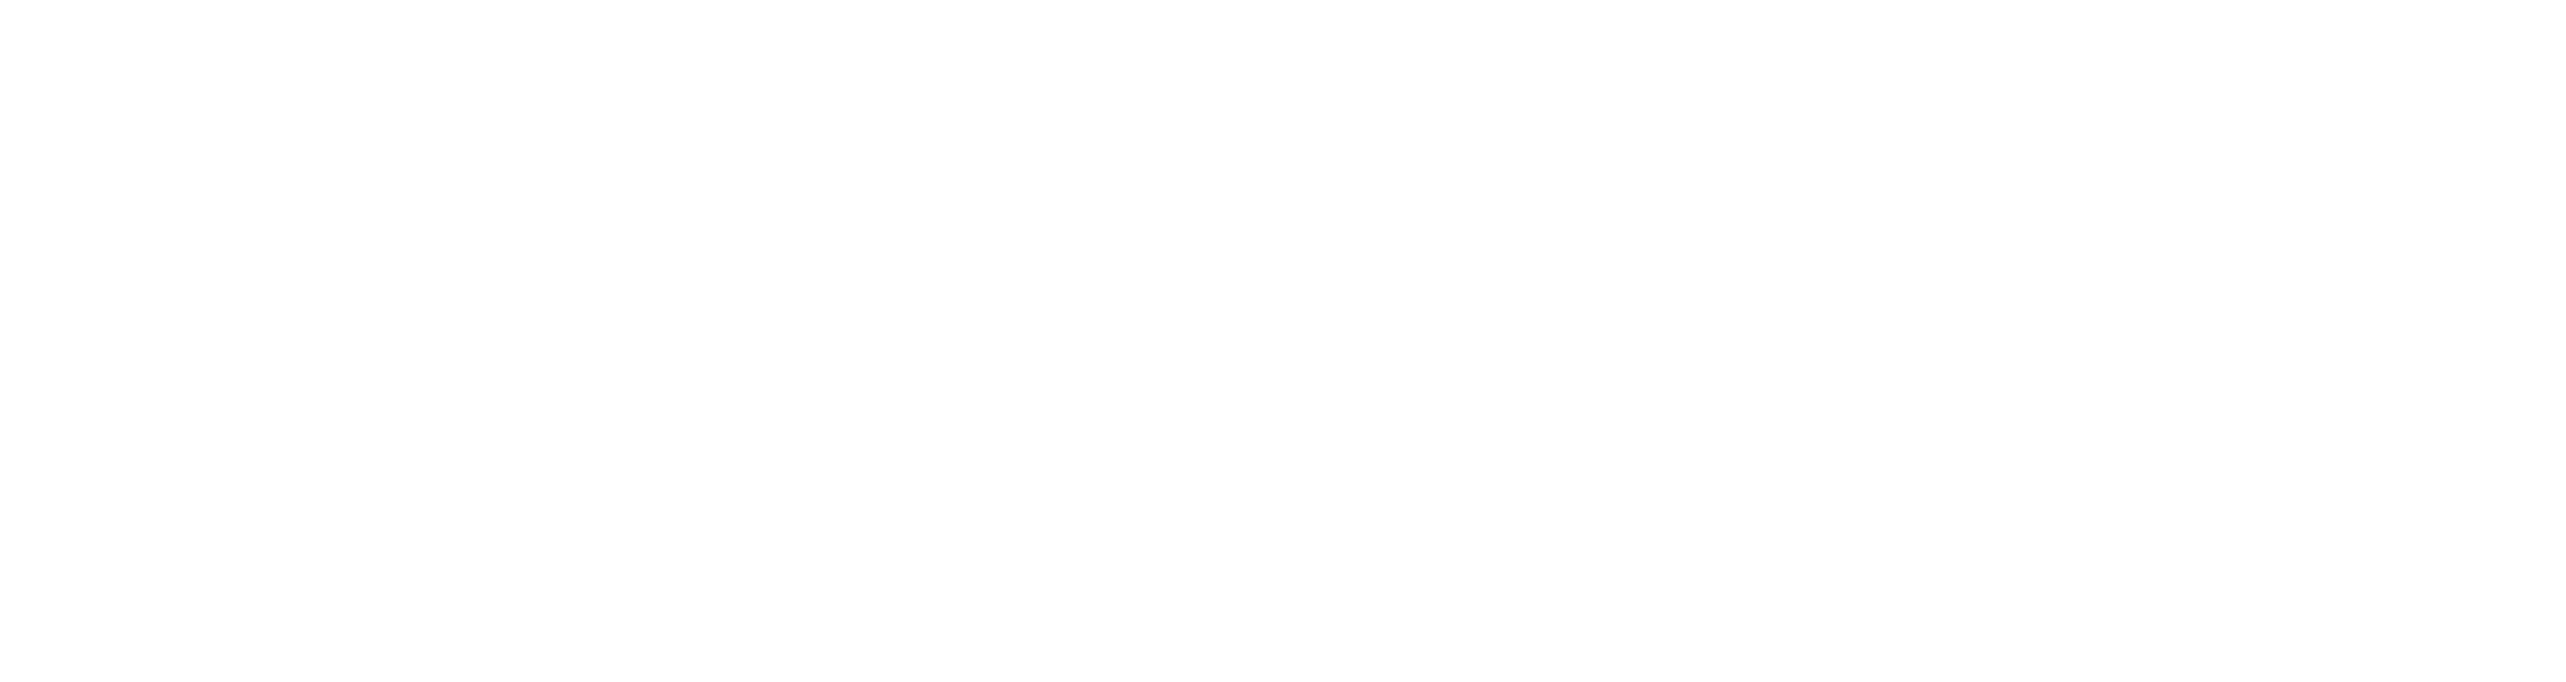 Access Healthcare Logo - White 